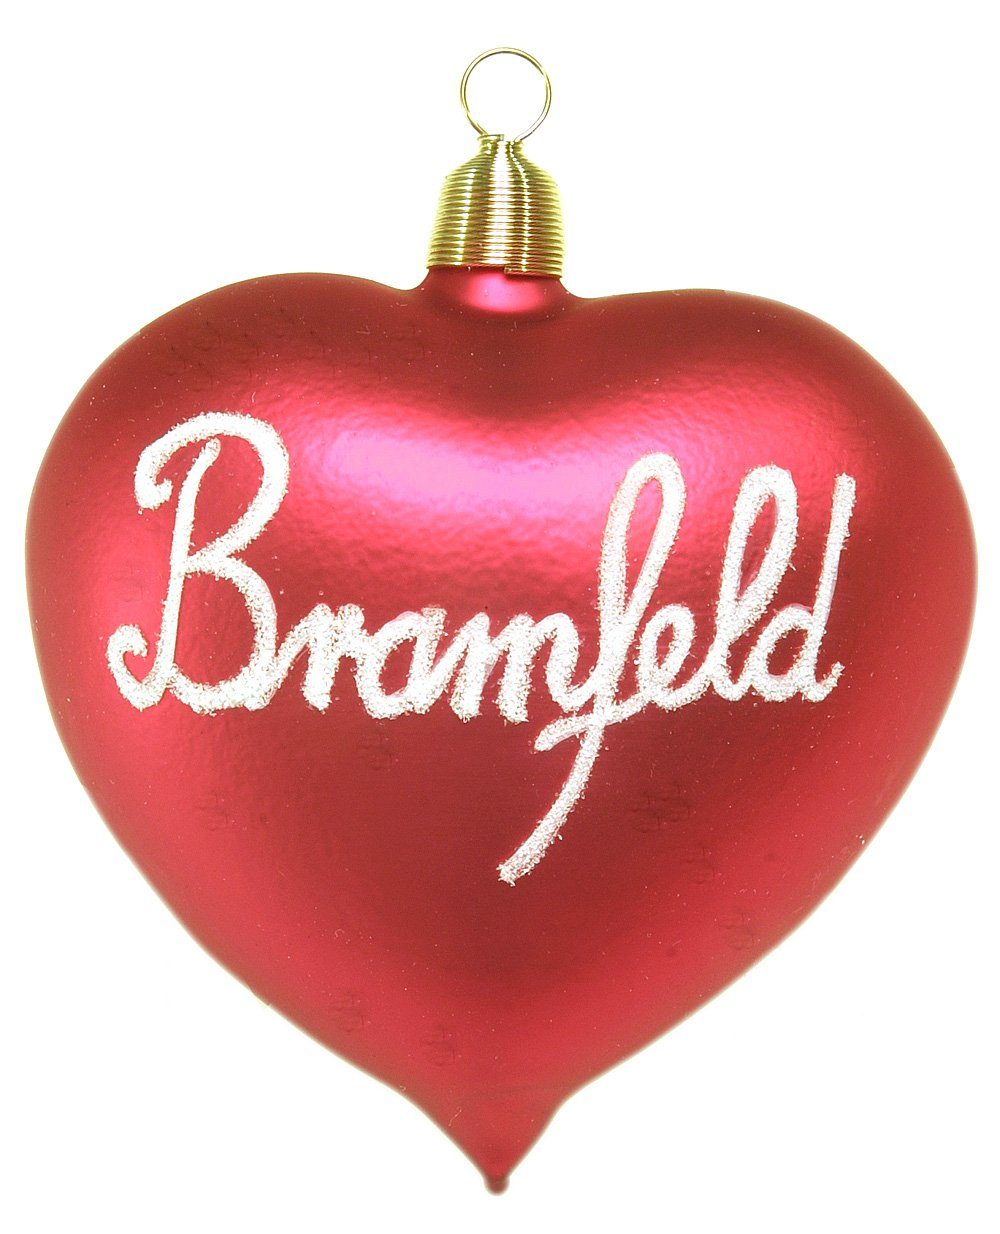 Bramfeld, - mundgeblasen - handdekoriert Weihnachtskontor Dekohänger Christbaumschmuck Hamburger Herz